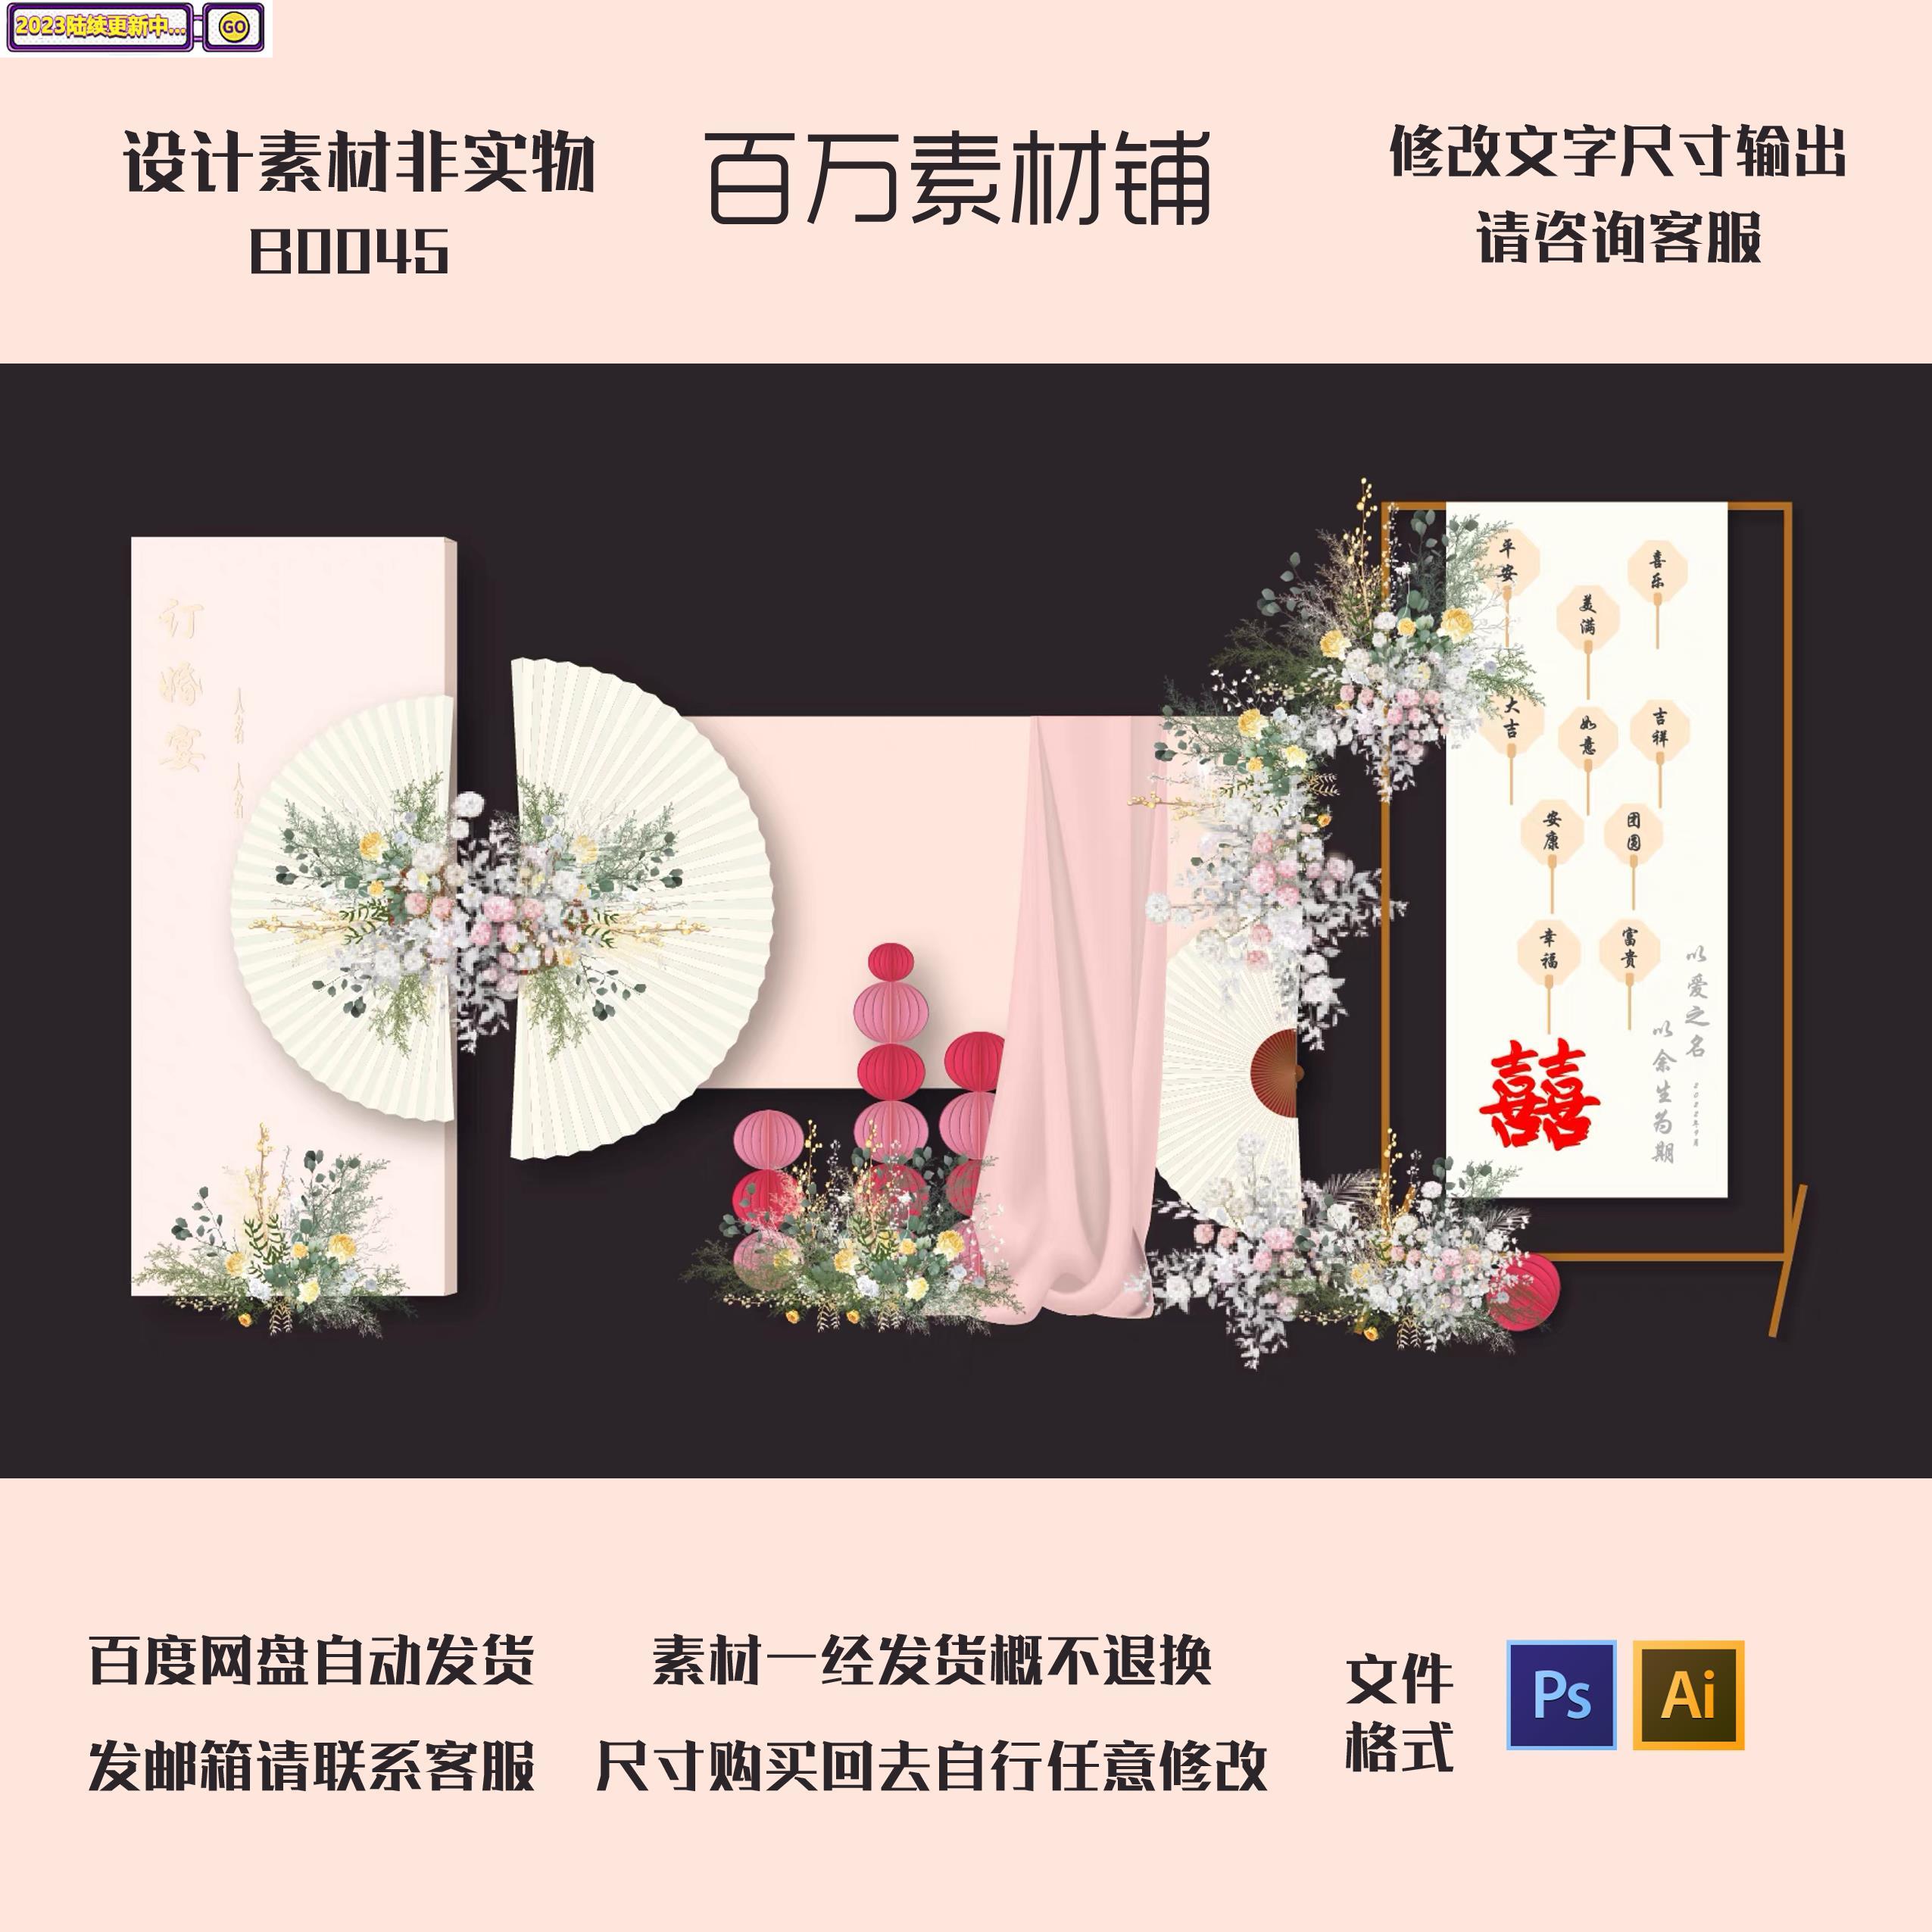 新中式粉色折扇订婚宴背景结婚婚礼迎宾区PSD模板设计素材ai矢量